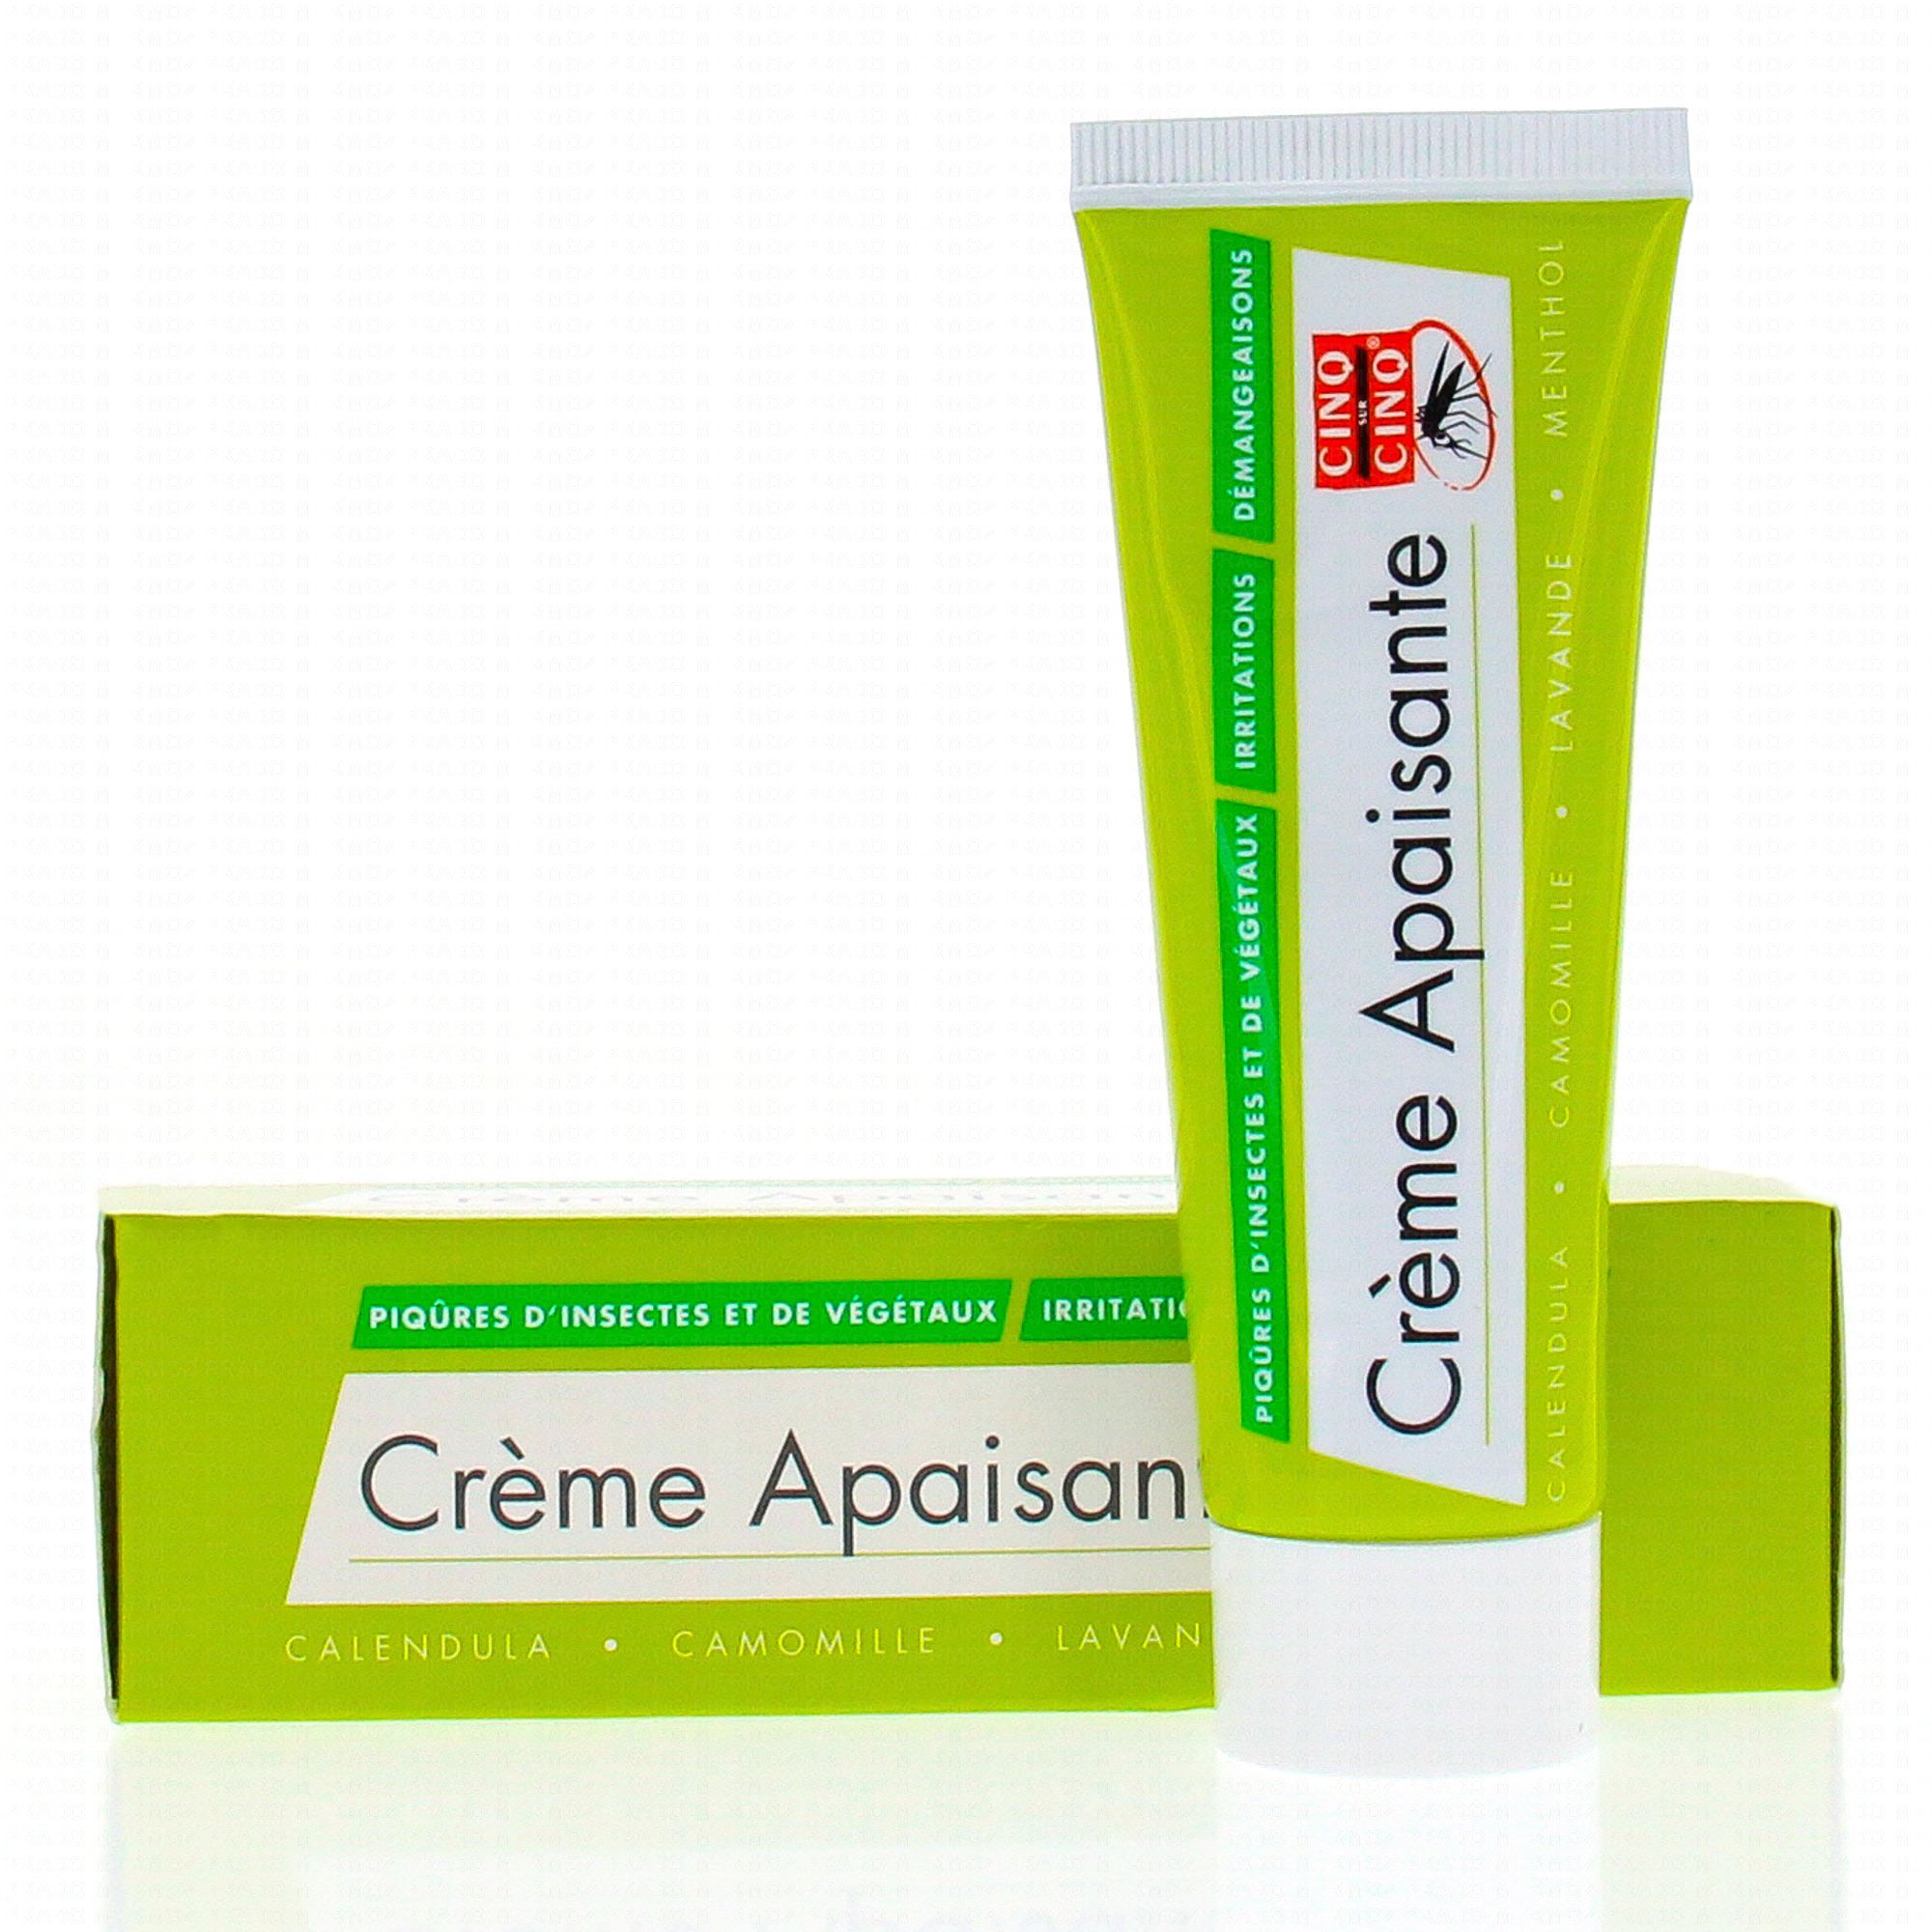 CINQ SUR CINQ Crème apaisante 3en1 piqûres insectes/végétaux tube ...